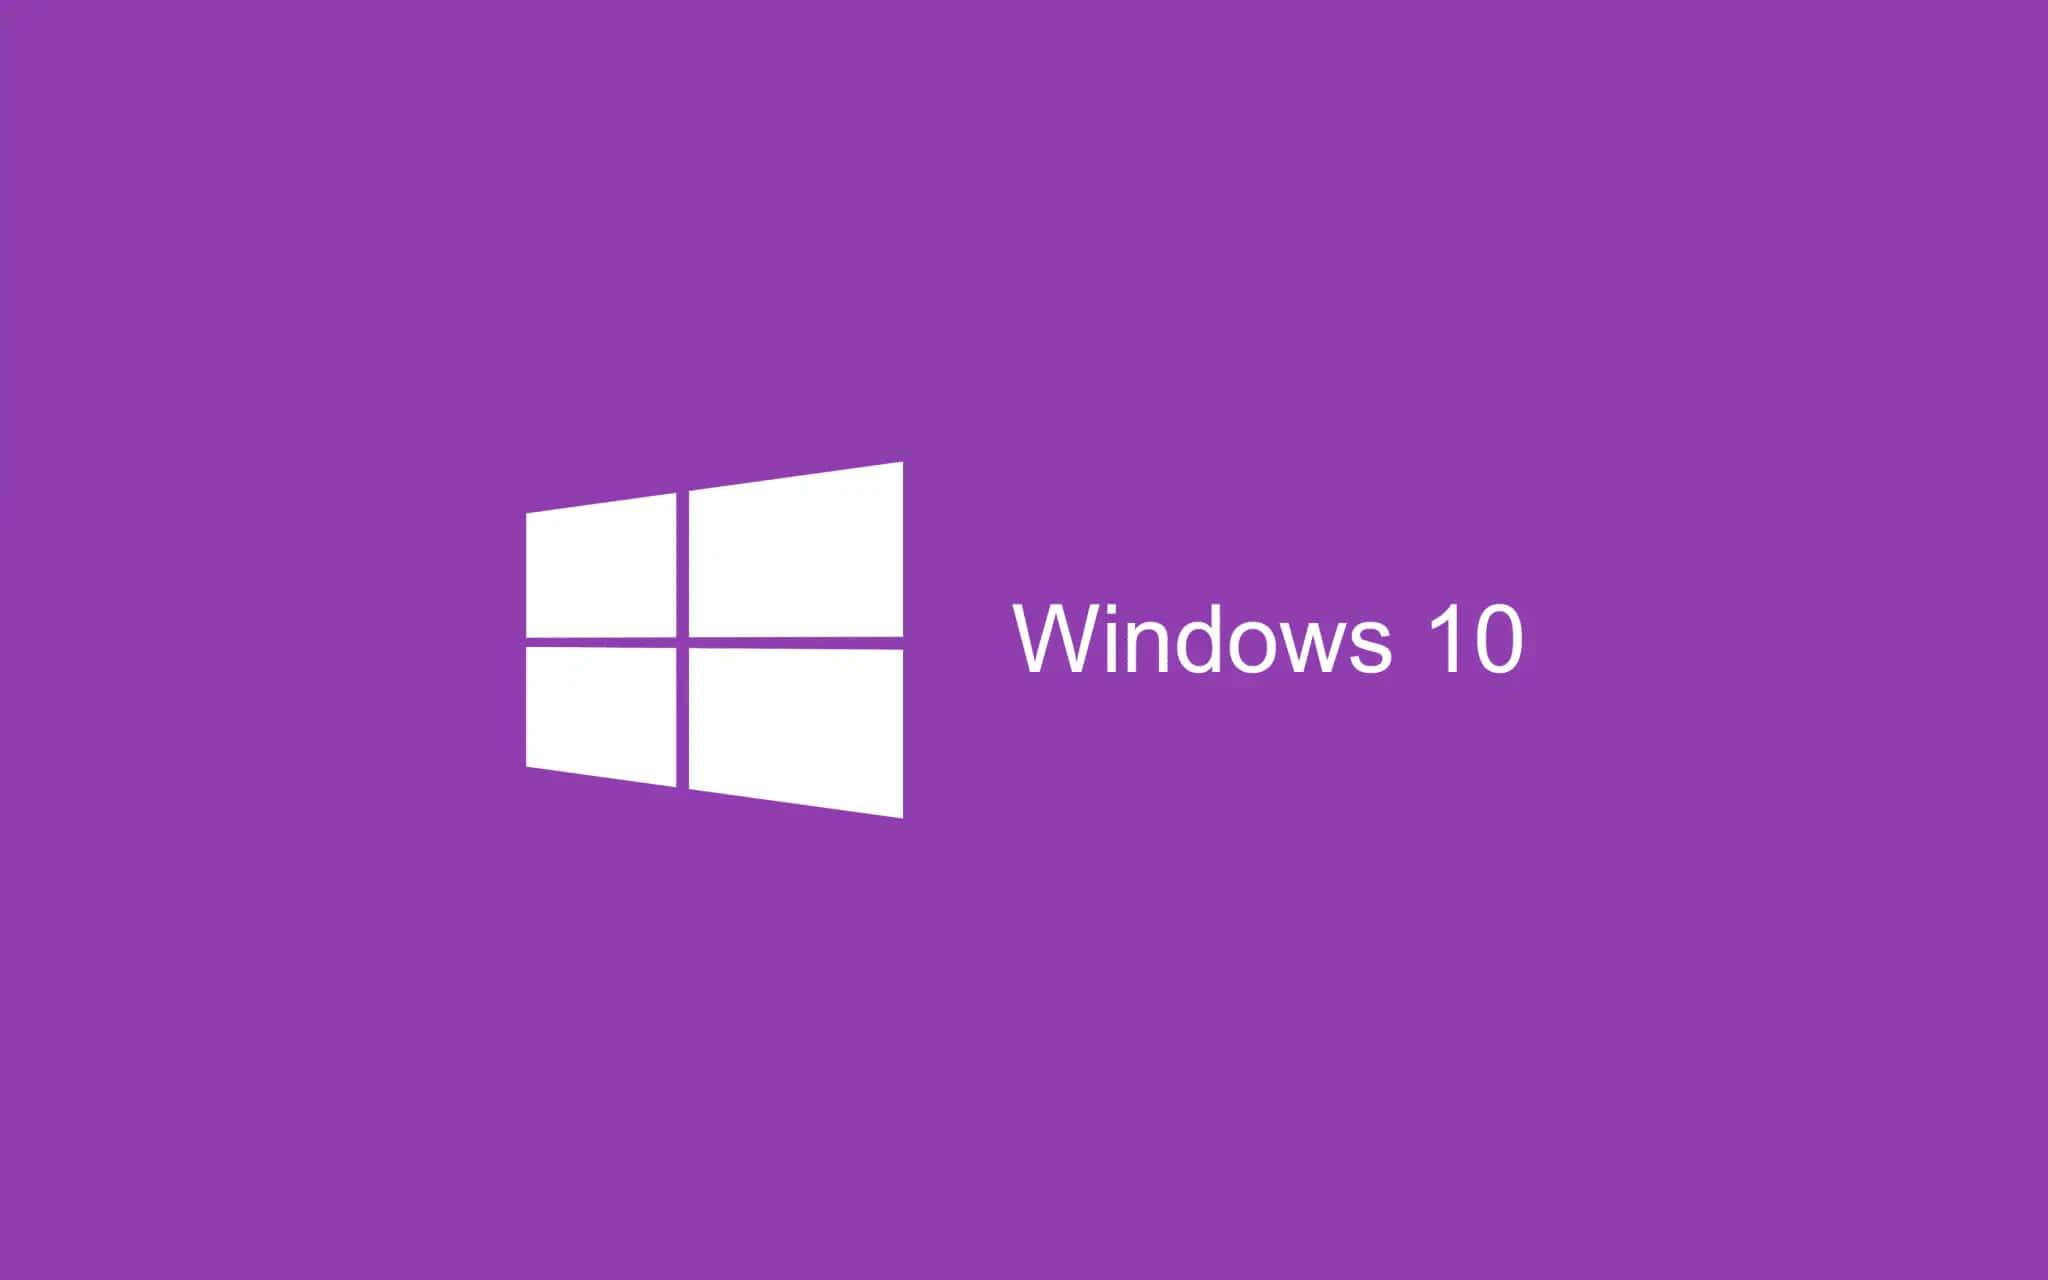 Personalize your Windows 10 Desktop